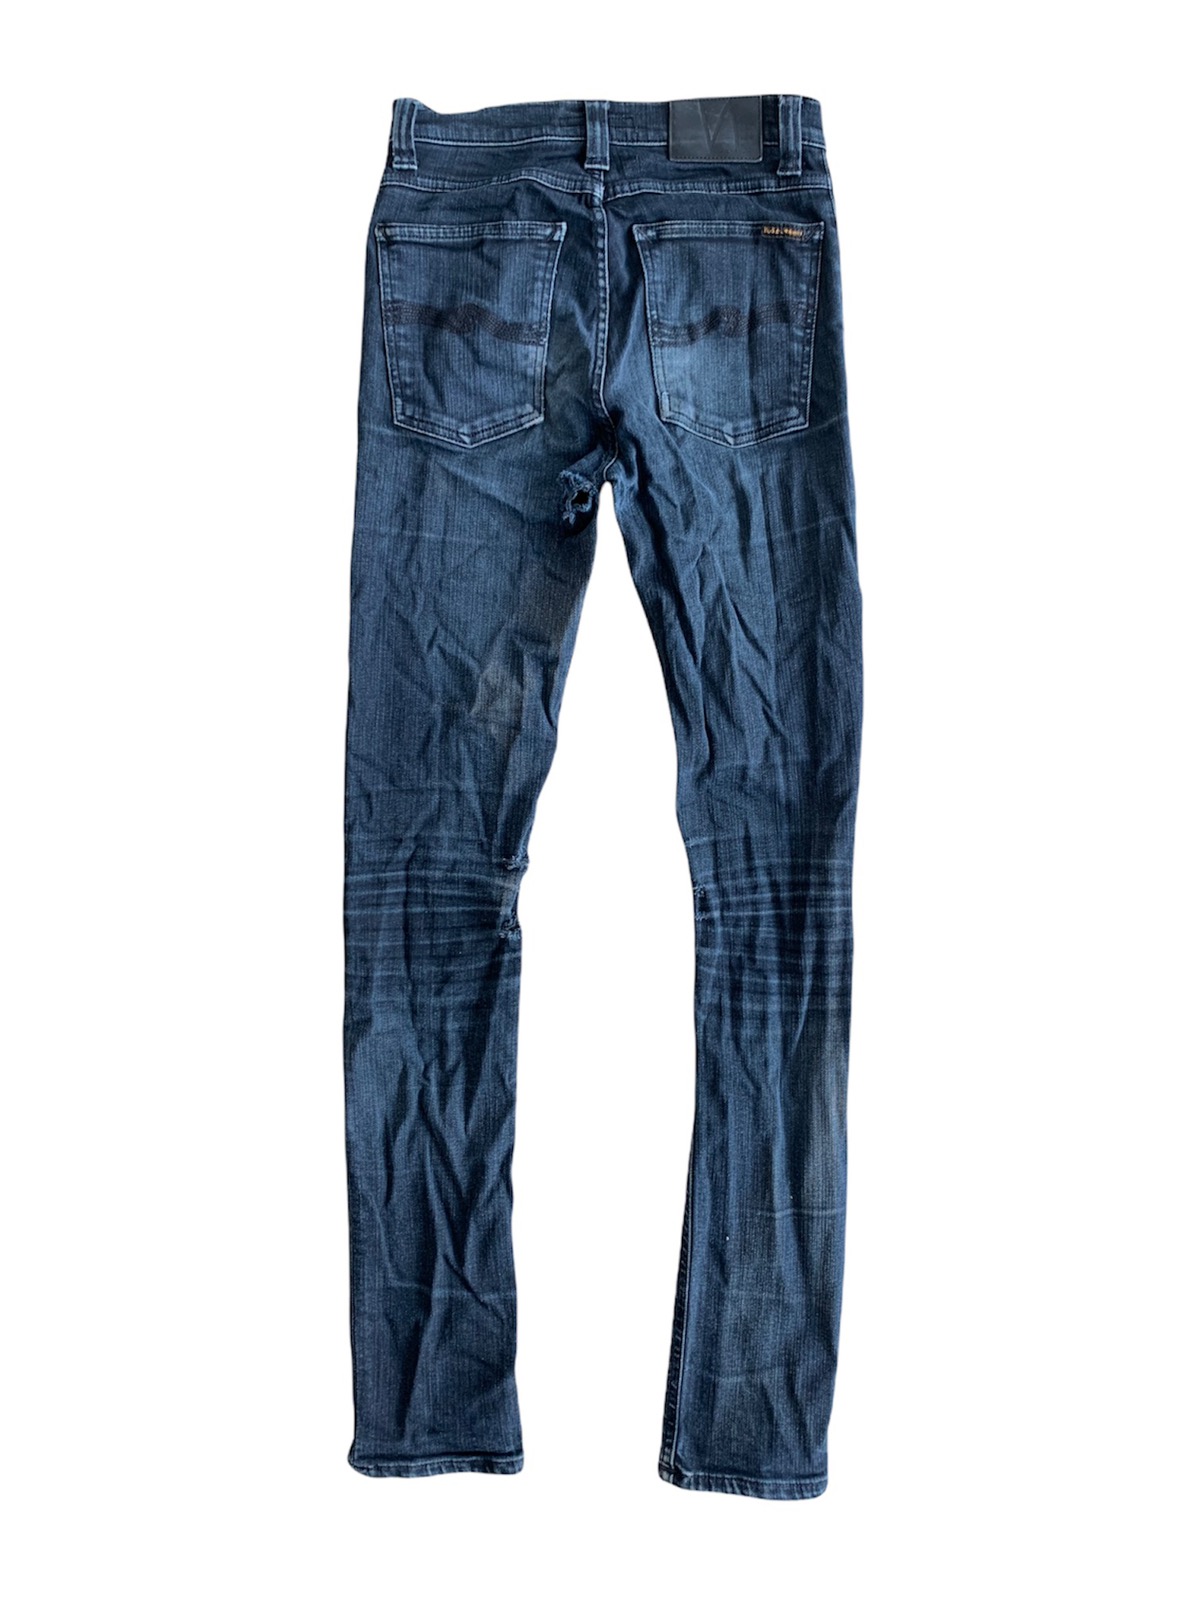 Nudie Jeans Distressed Slim-Fits Denim Pant - 2